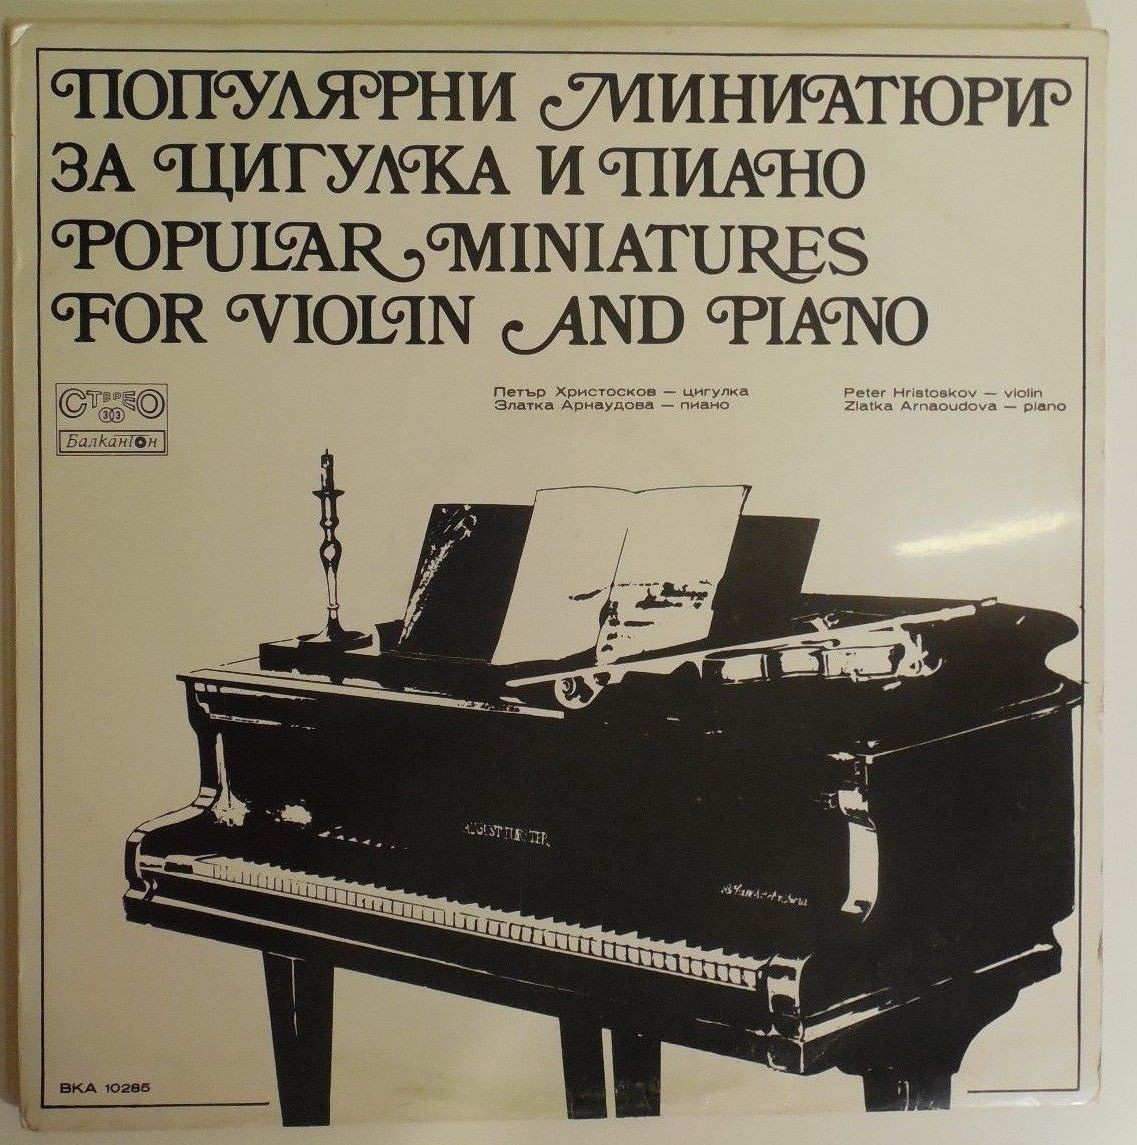 Популярни миниатюри за цигулка и пиано